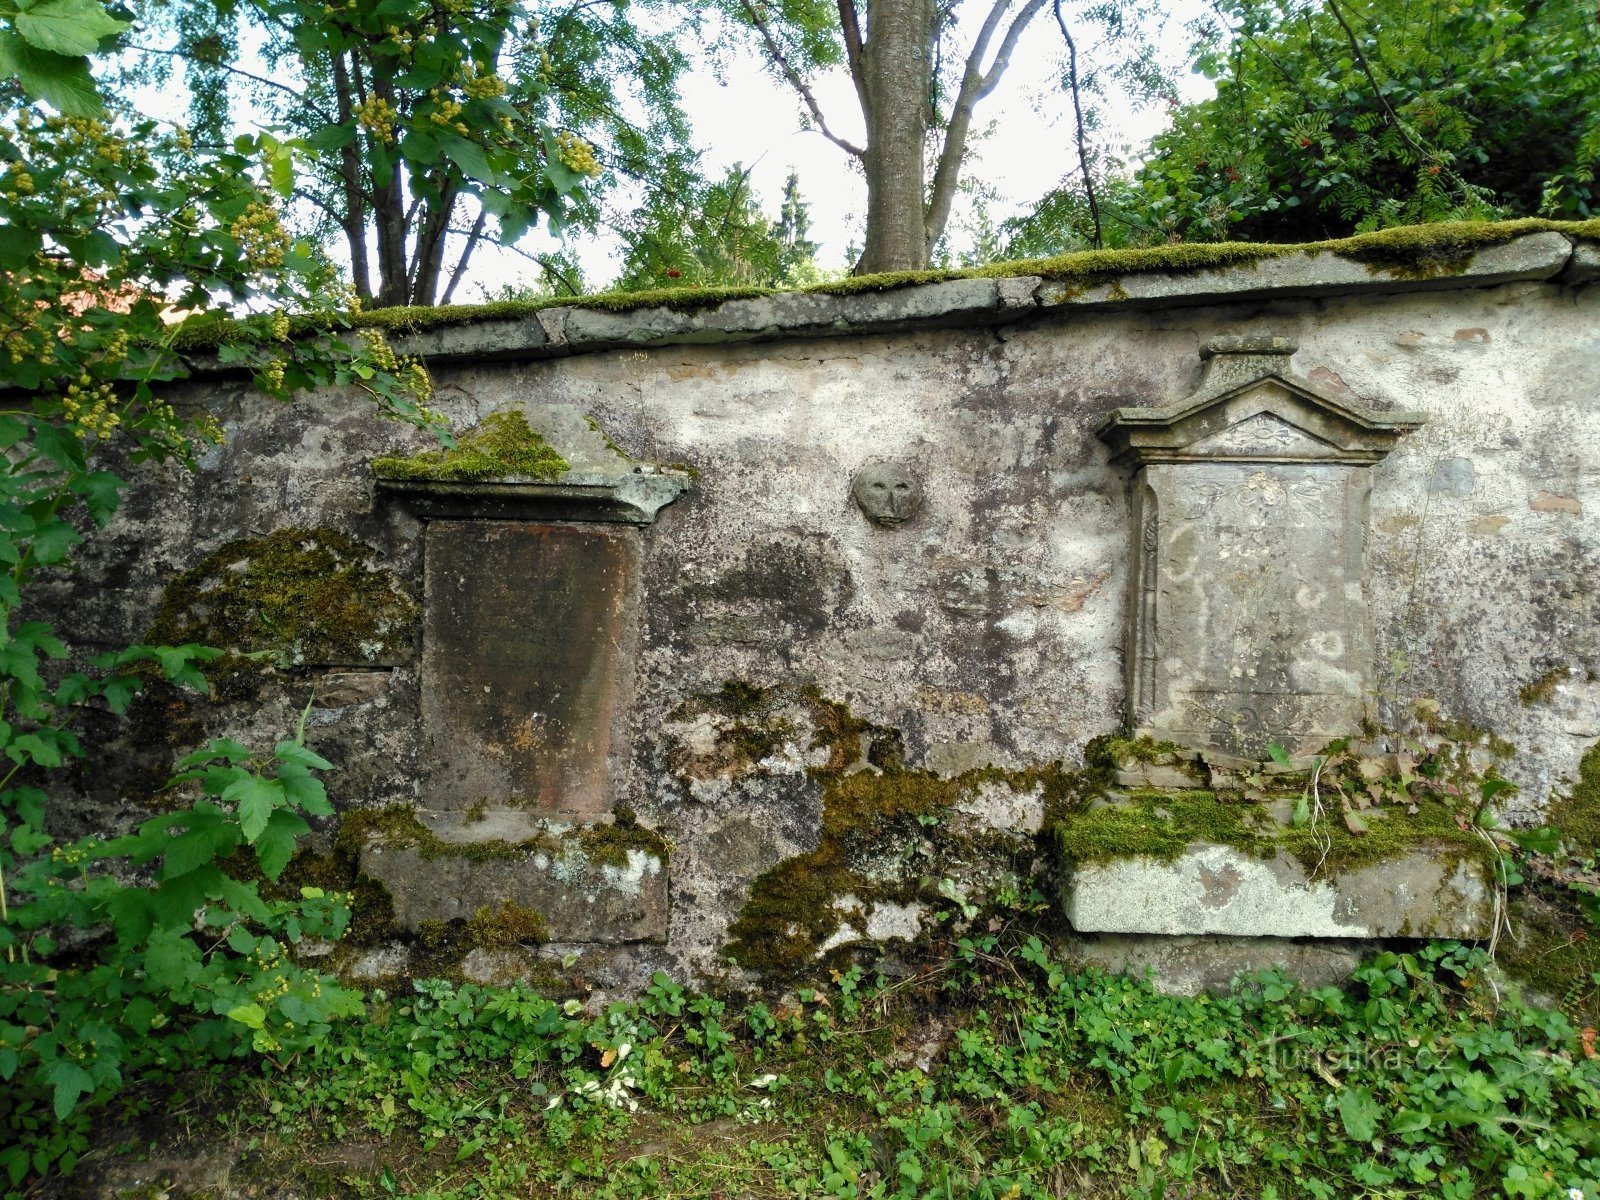 mur cmentarny z rzeźbioną kamienną głową.